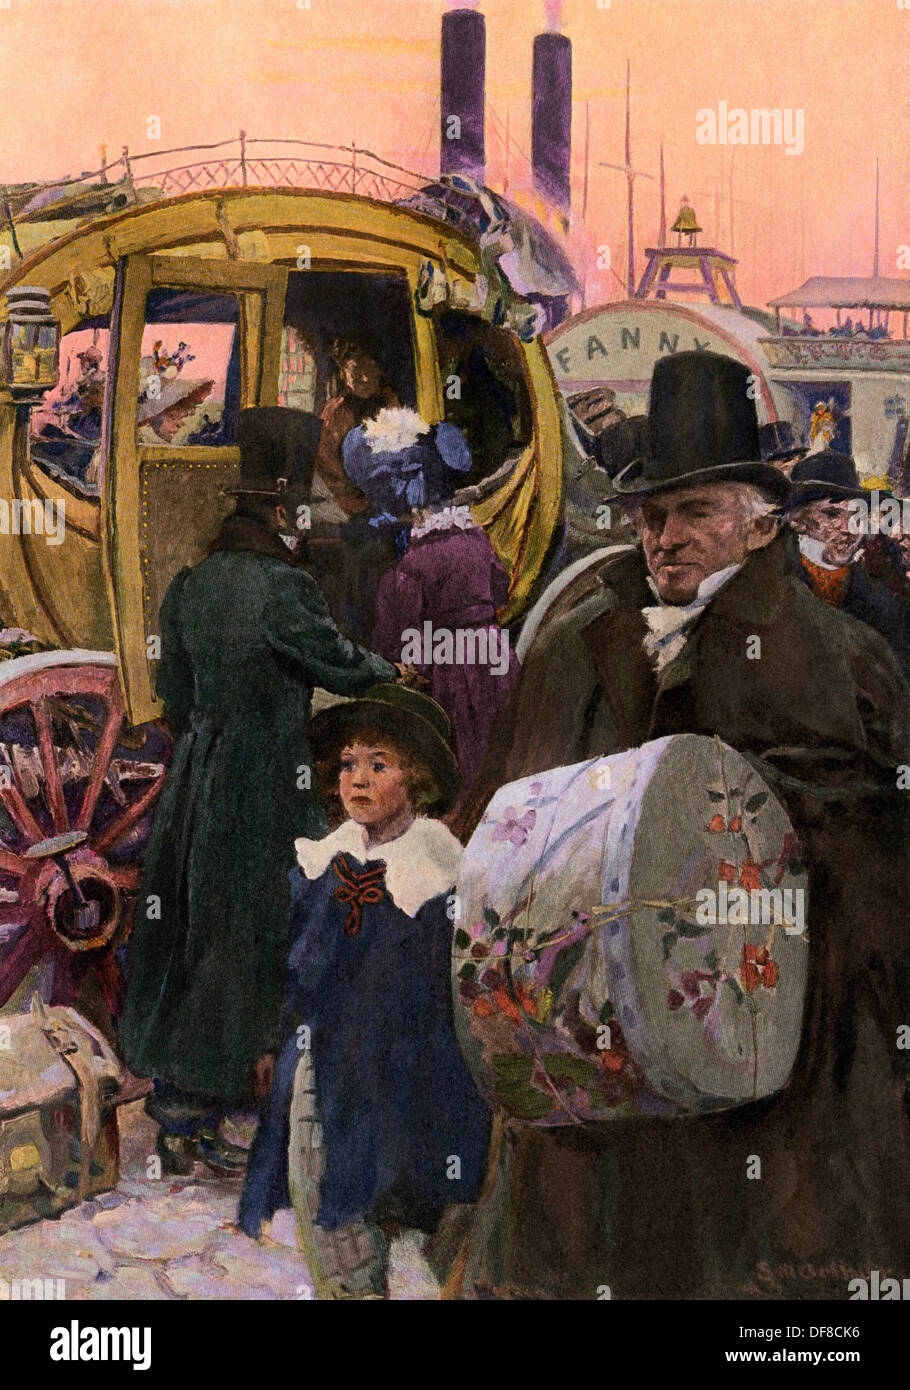 La réunion des foules à steamboat Norwich, Connecticut, début des années 1800. Demi-teinte de couleur d'une illustration d'Arthurs Stanley Banque D'Images